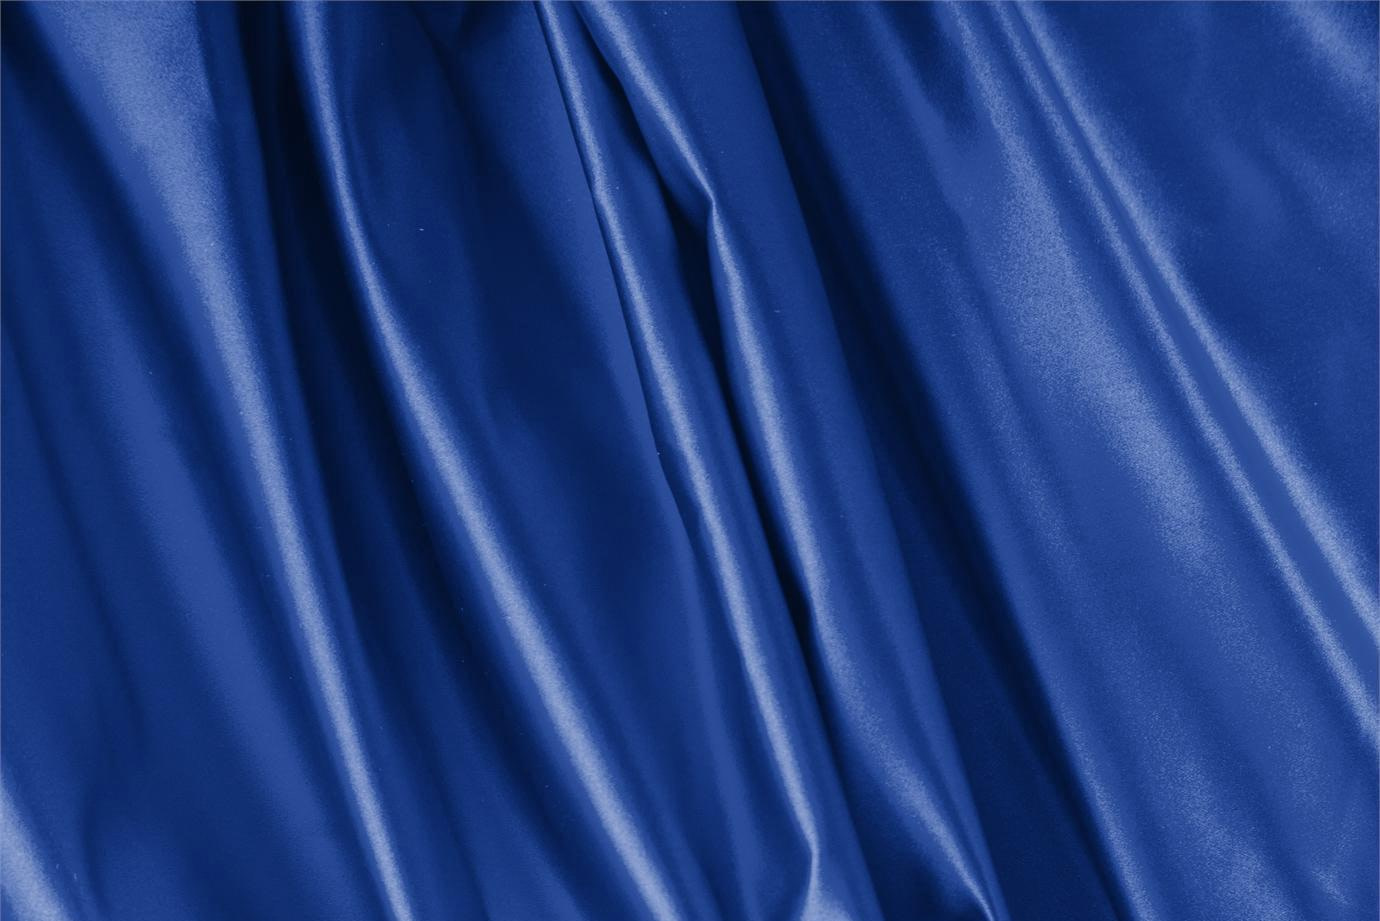 Tessuto Duchesse Blu Royale in Seta per Abbigliamento UN000076